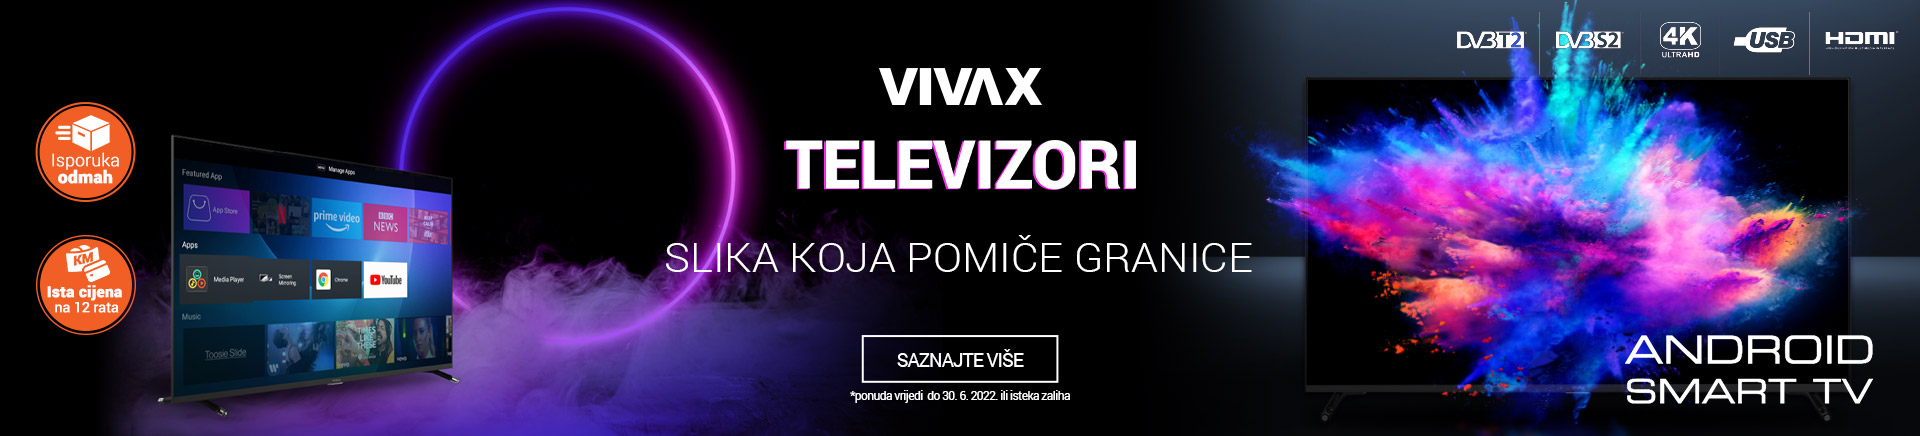 BA Vivax televizori slika koja pomiče granice MOBILE 380 X 436.jpg